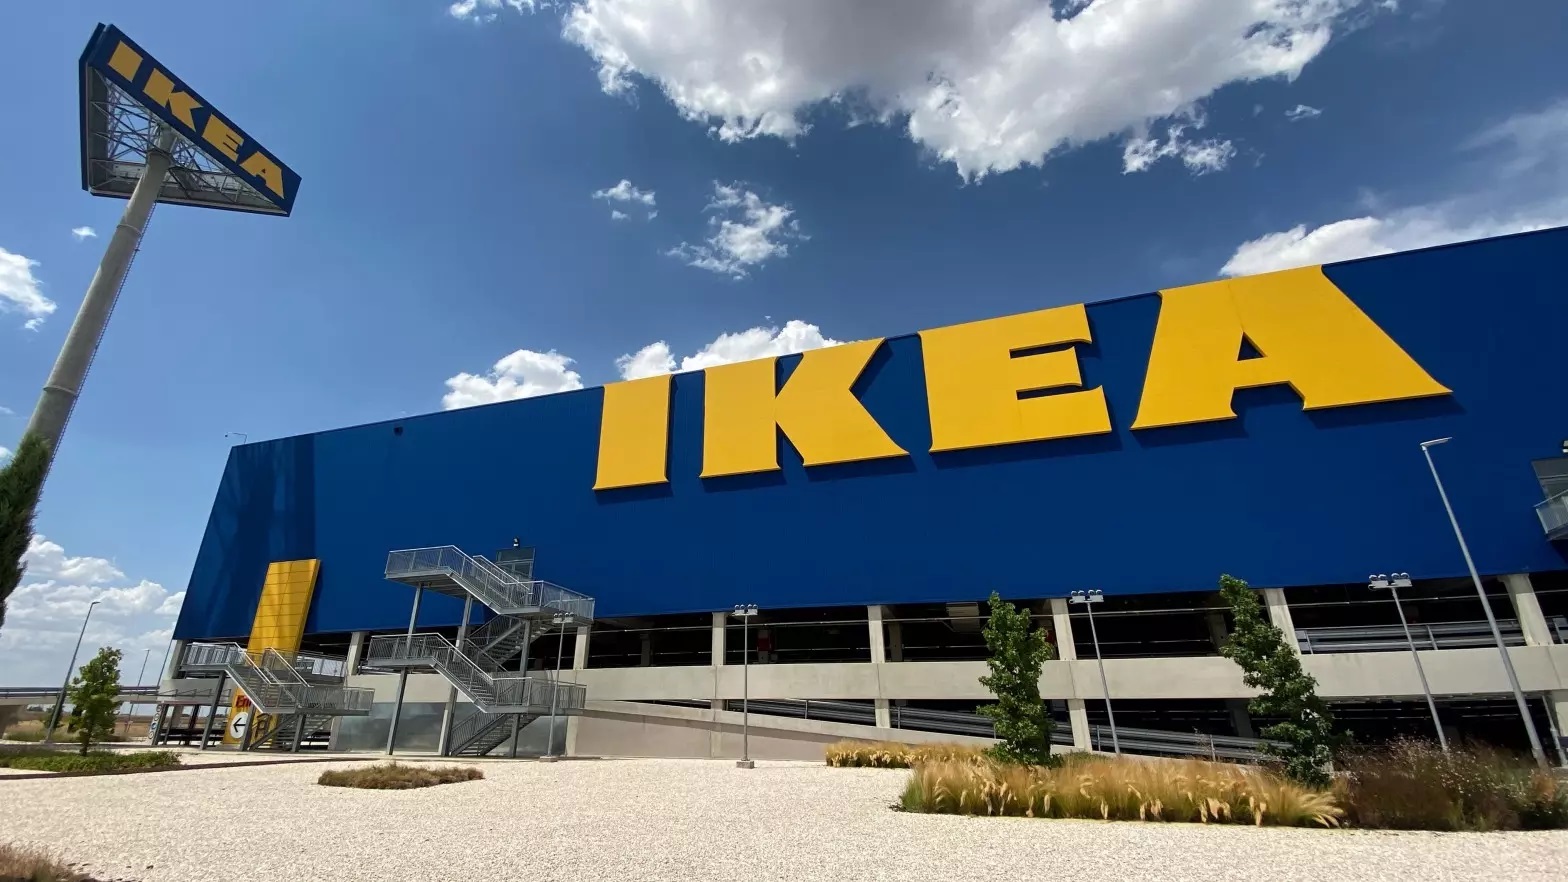 3 ideas para organizar tu escritorio sin gastar mucho - IKEA